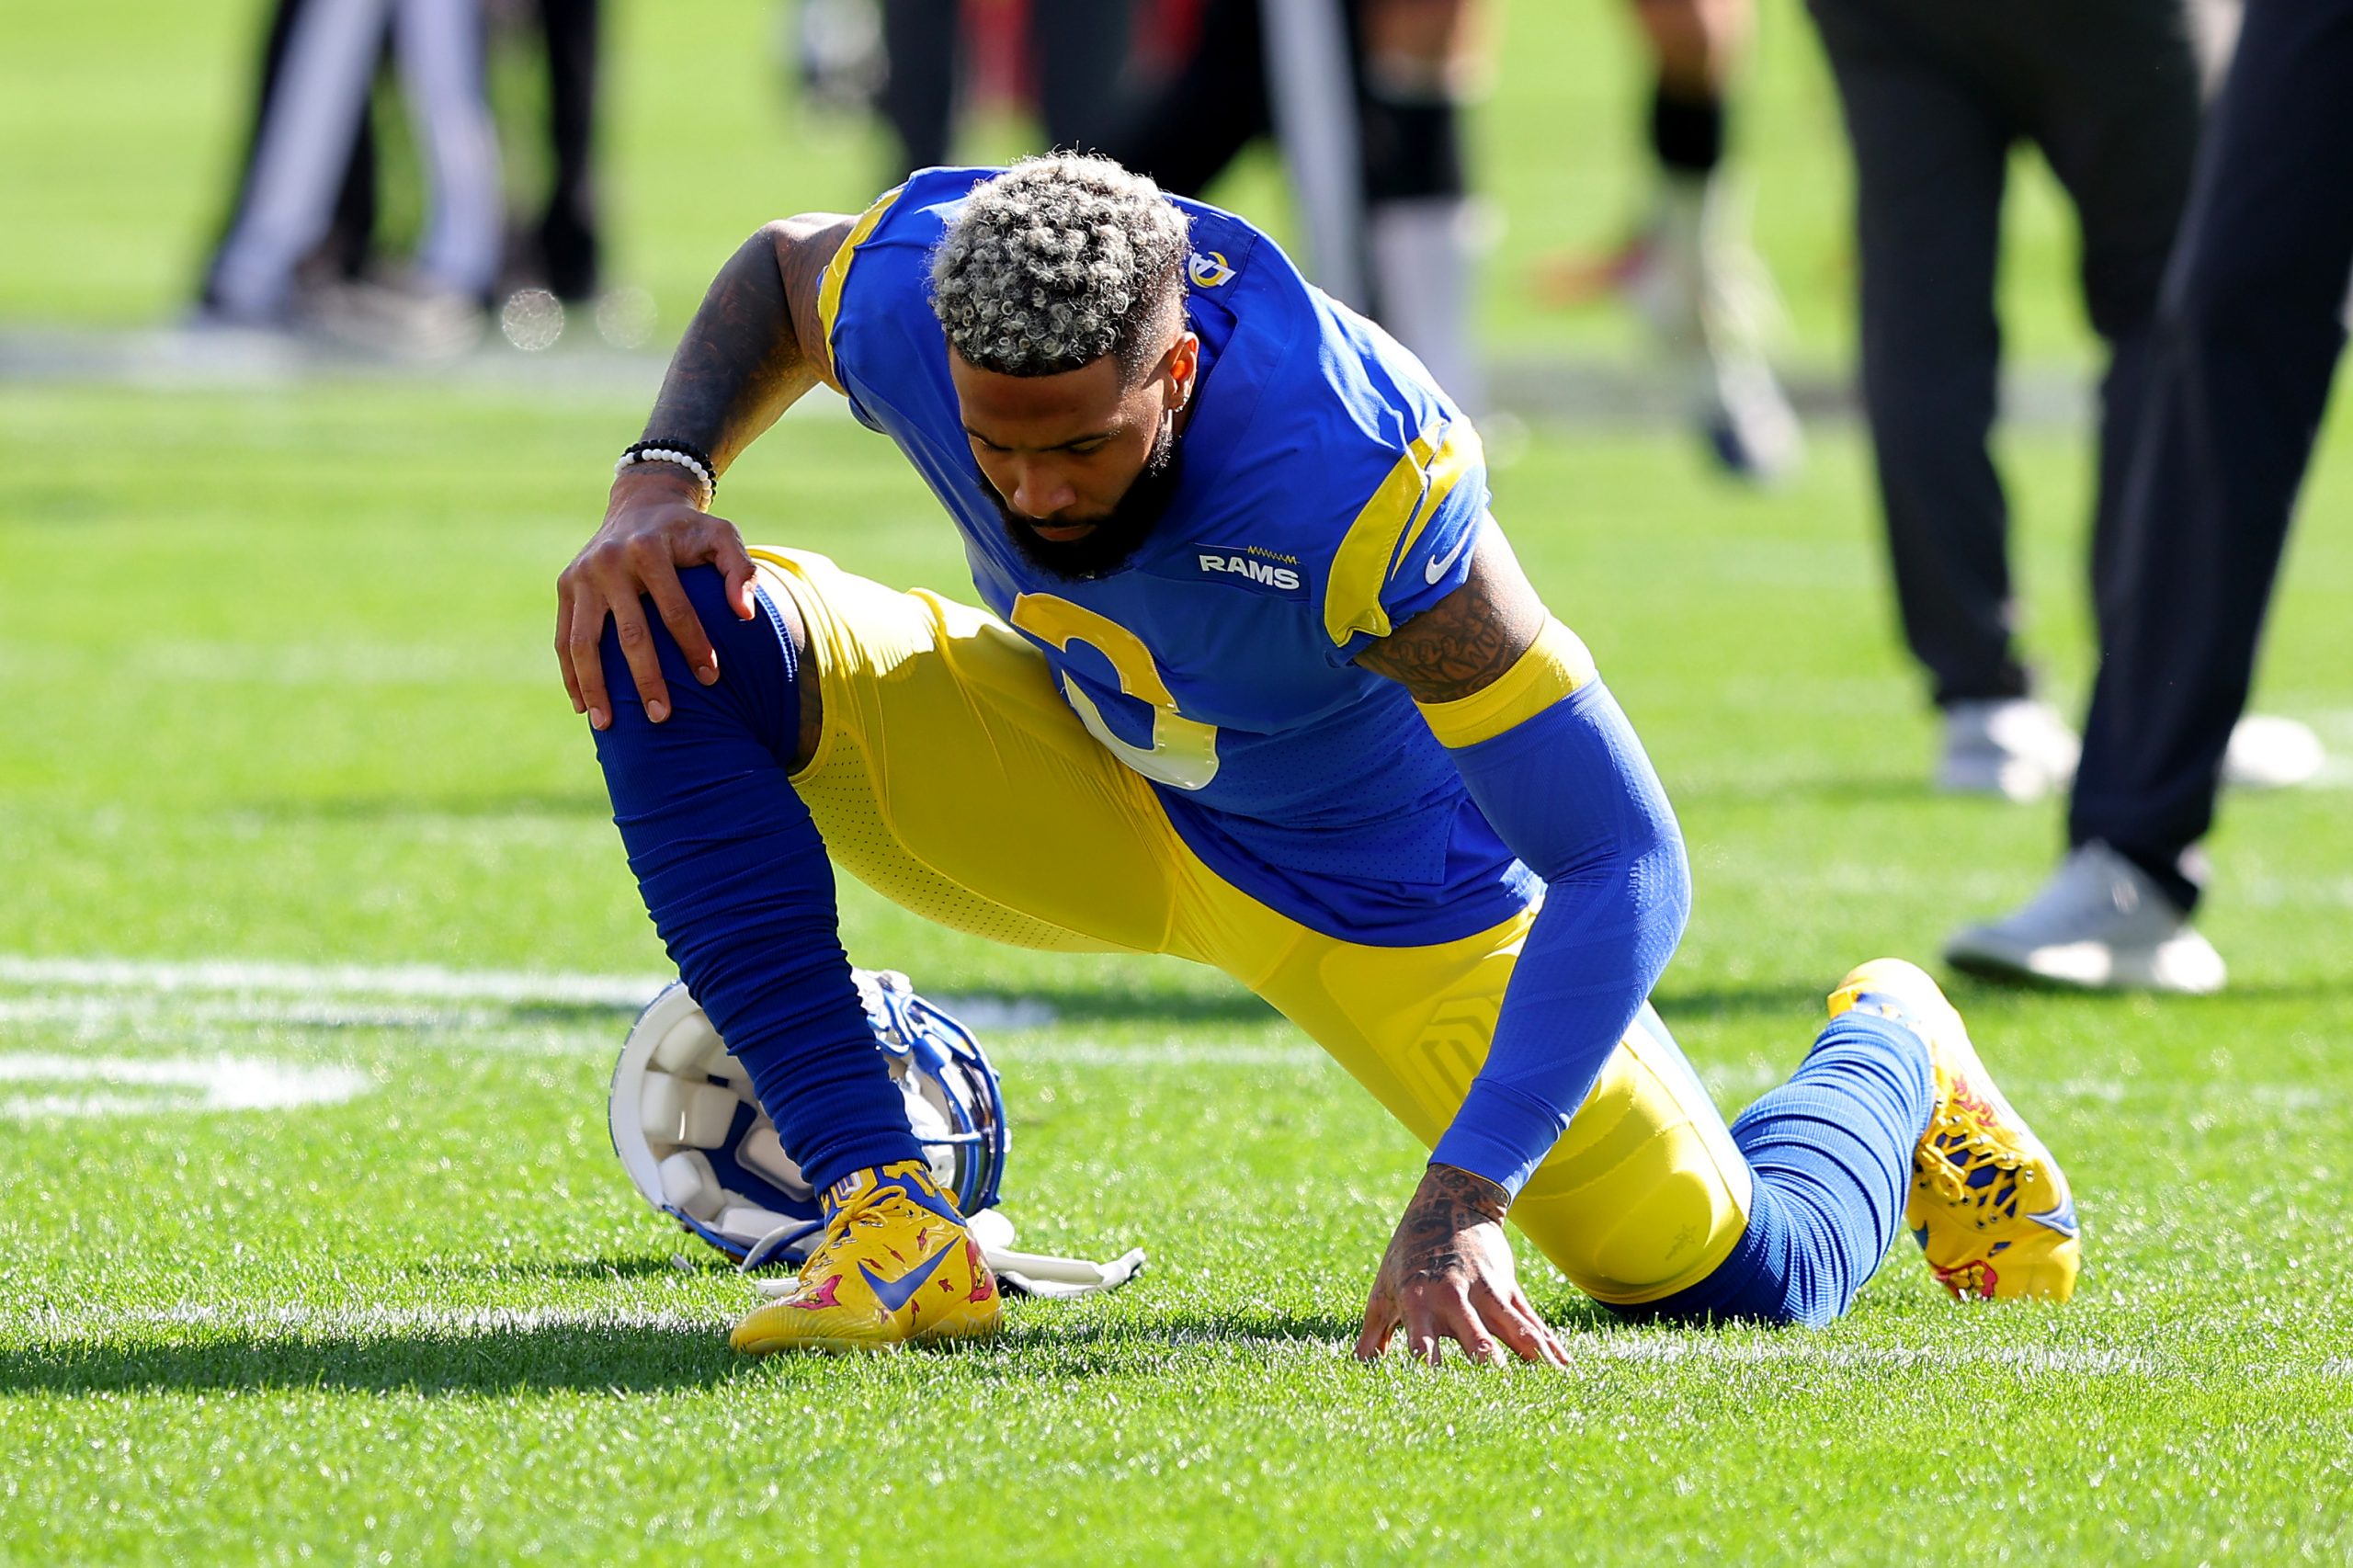 Odell Beckham Jr.: Rams star went from seen as villain to top teammate